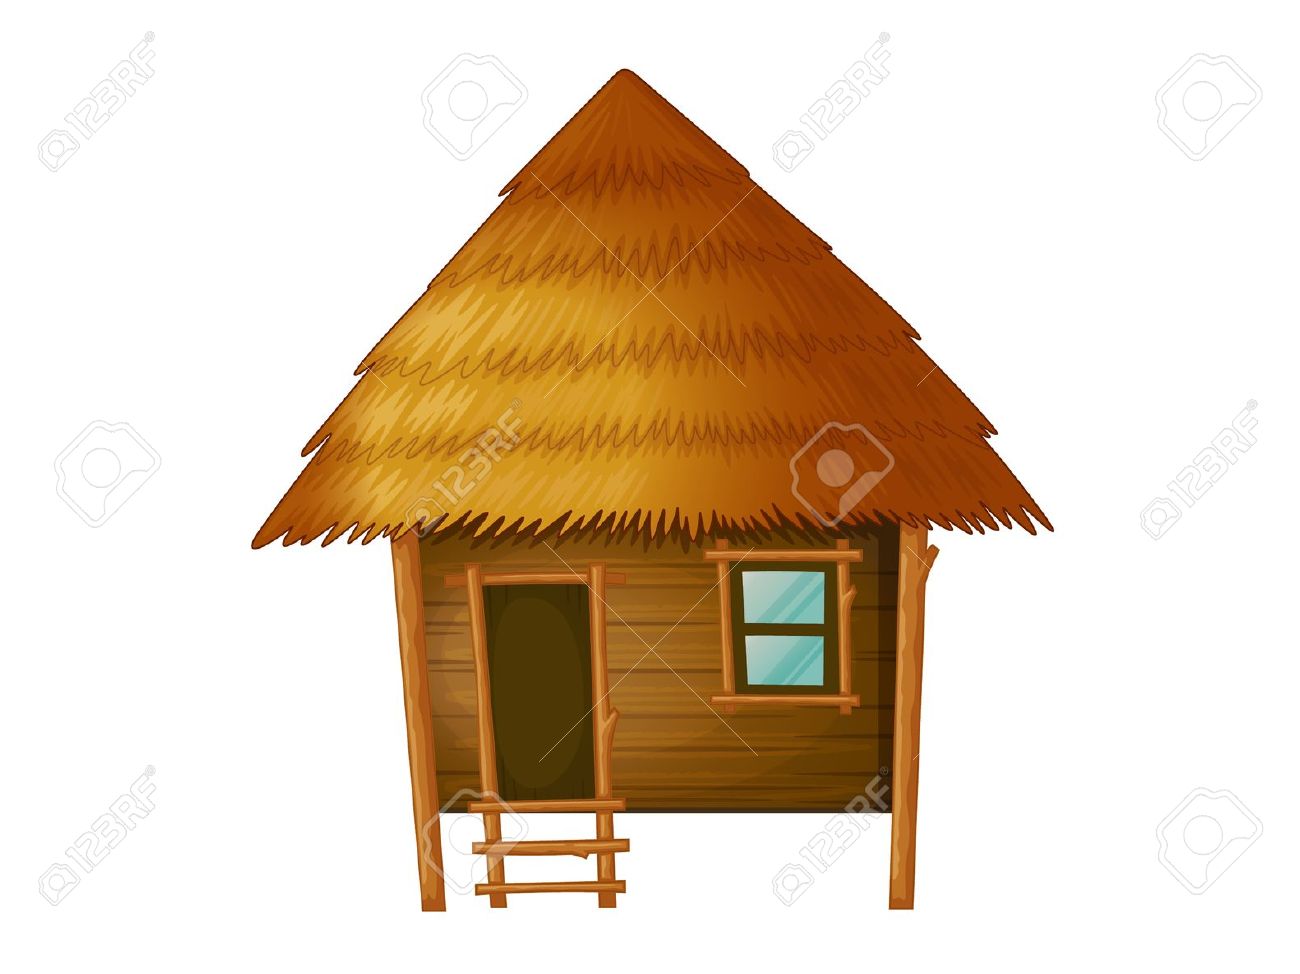 hut clipart bungalow